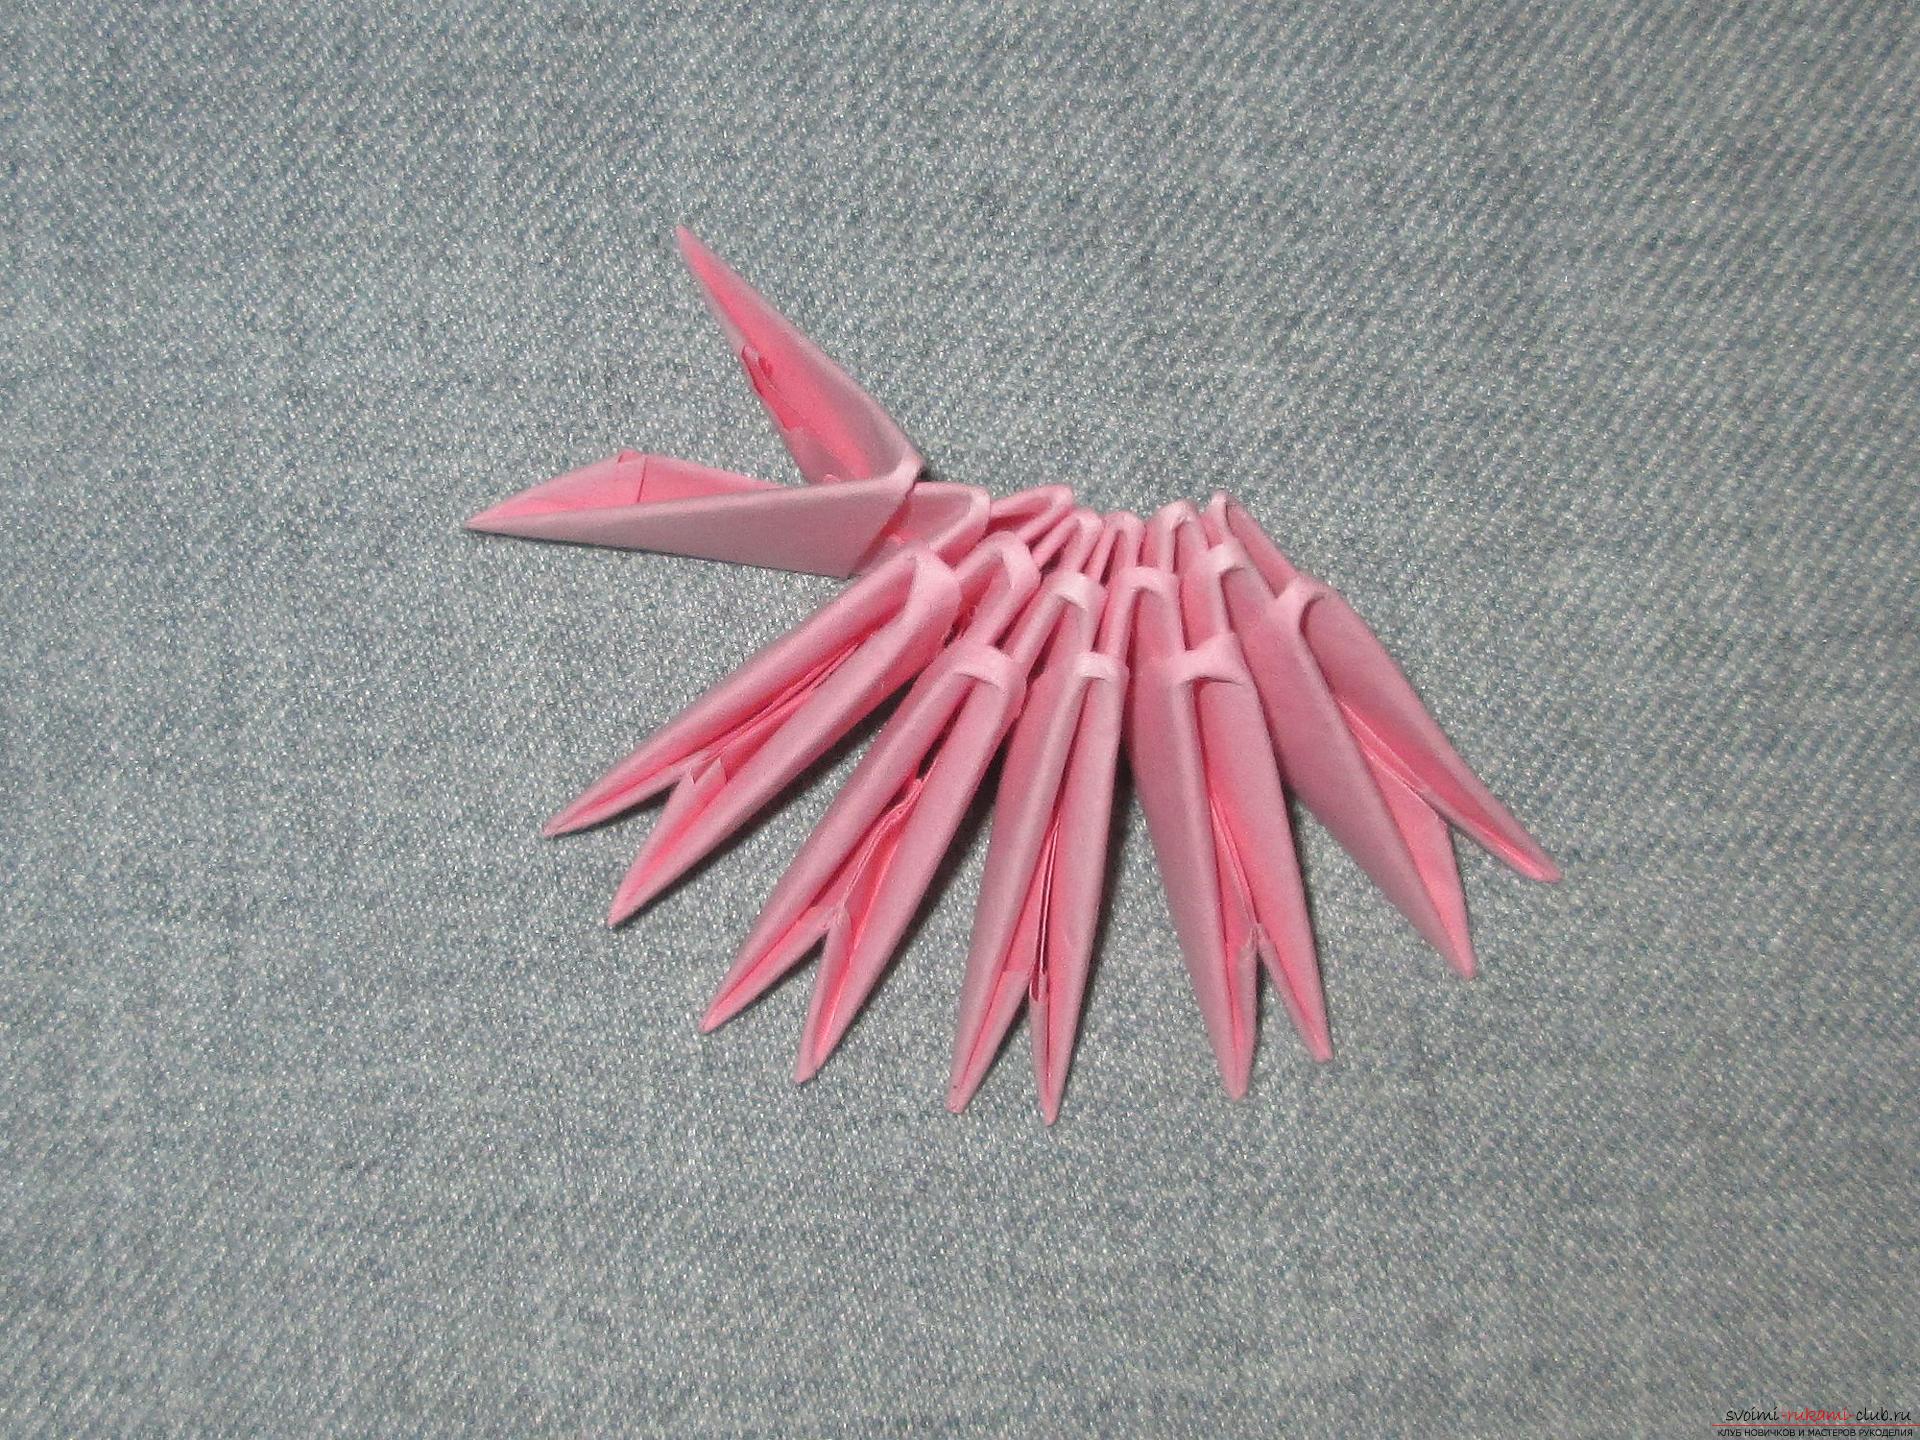 Мастер-класс с подробным описанием и фото научит делать модульное оригами птицы.. Фото №5